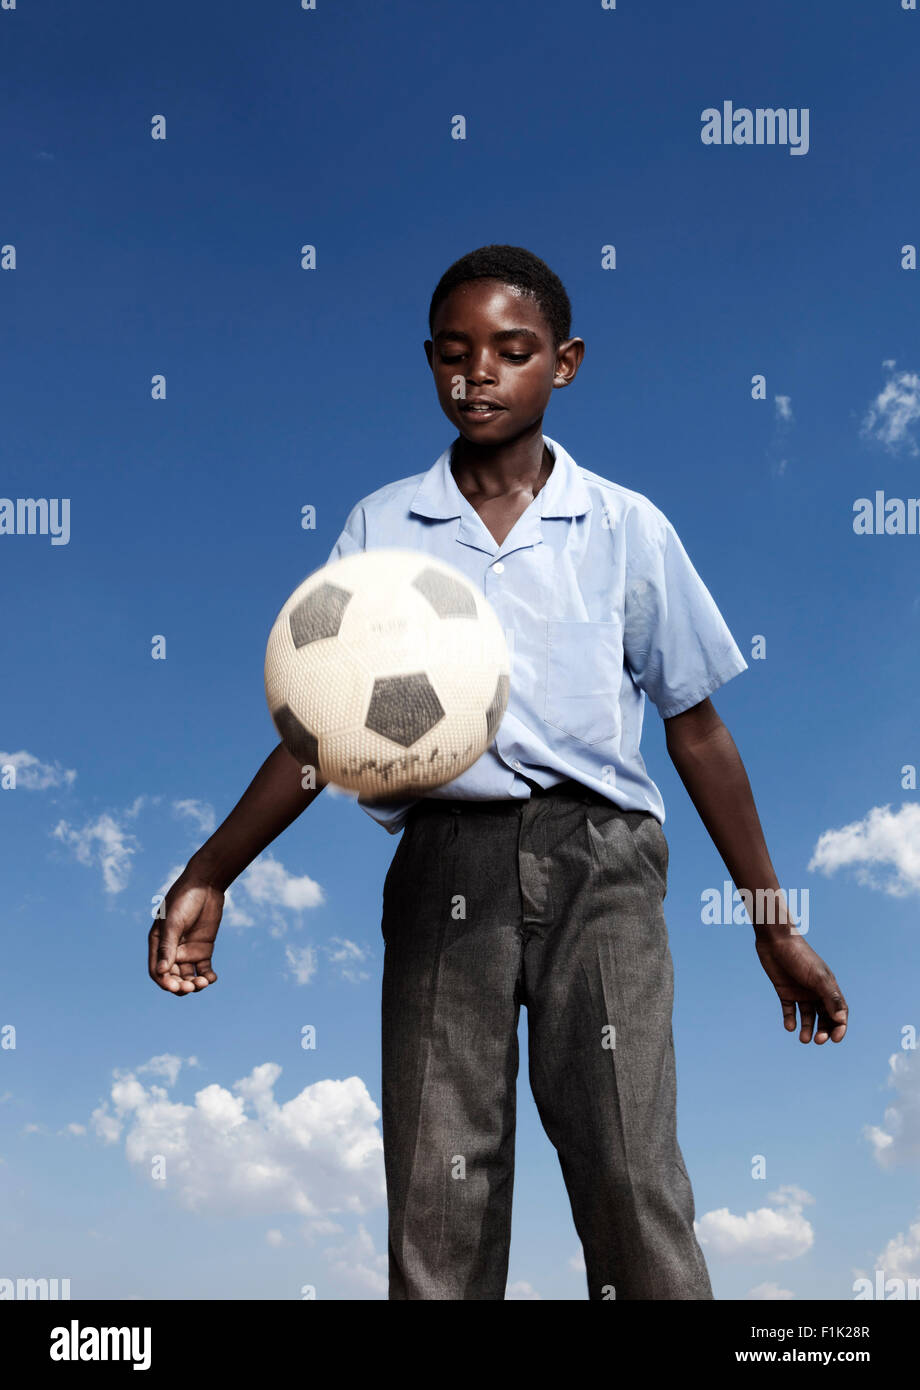 Élève de l'école africaine joue avec un ballon de foot Banque D'Images